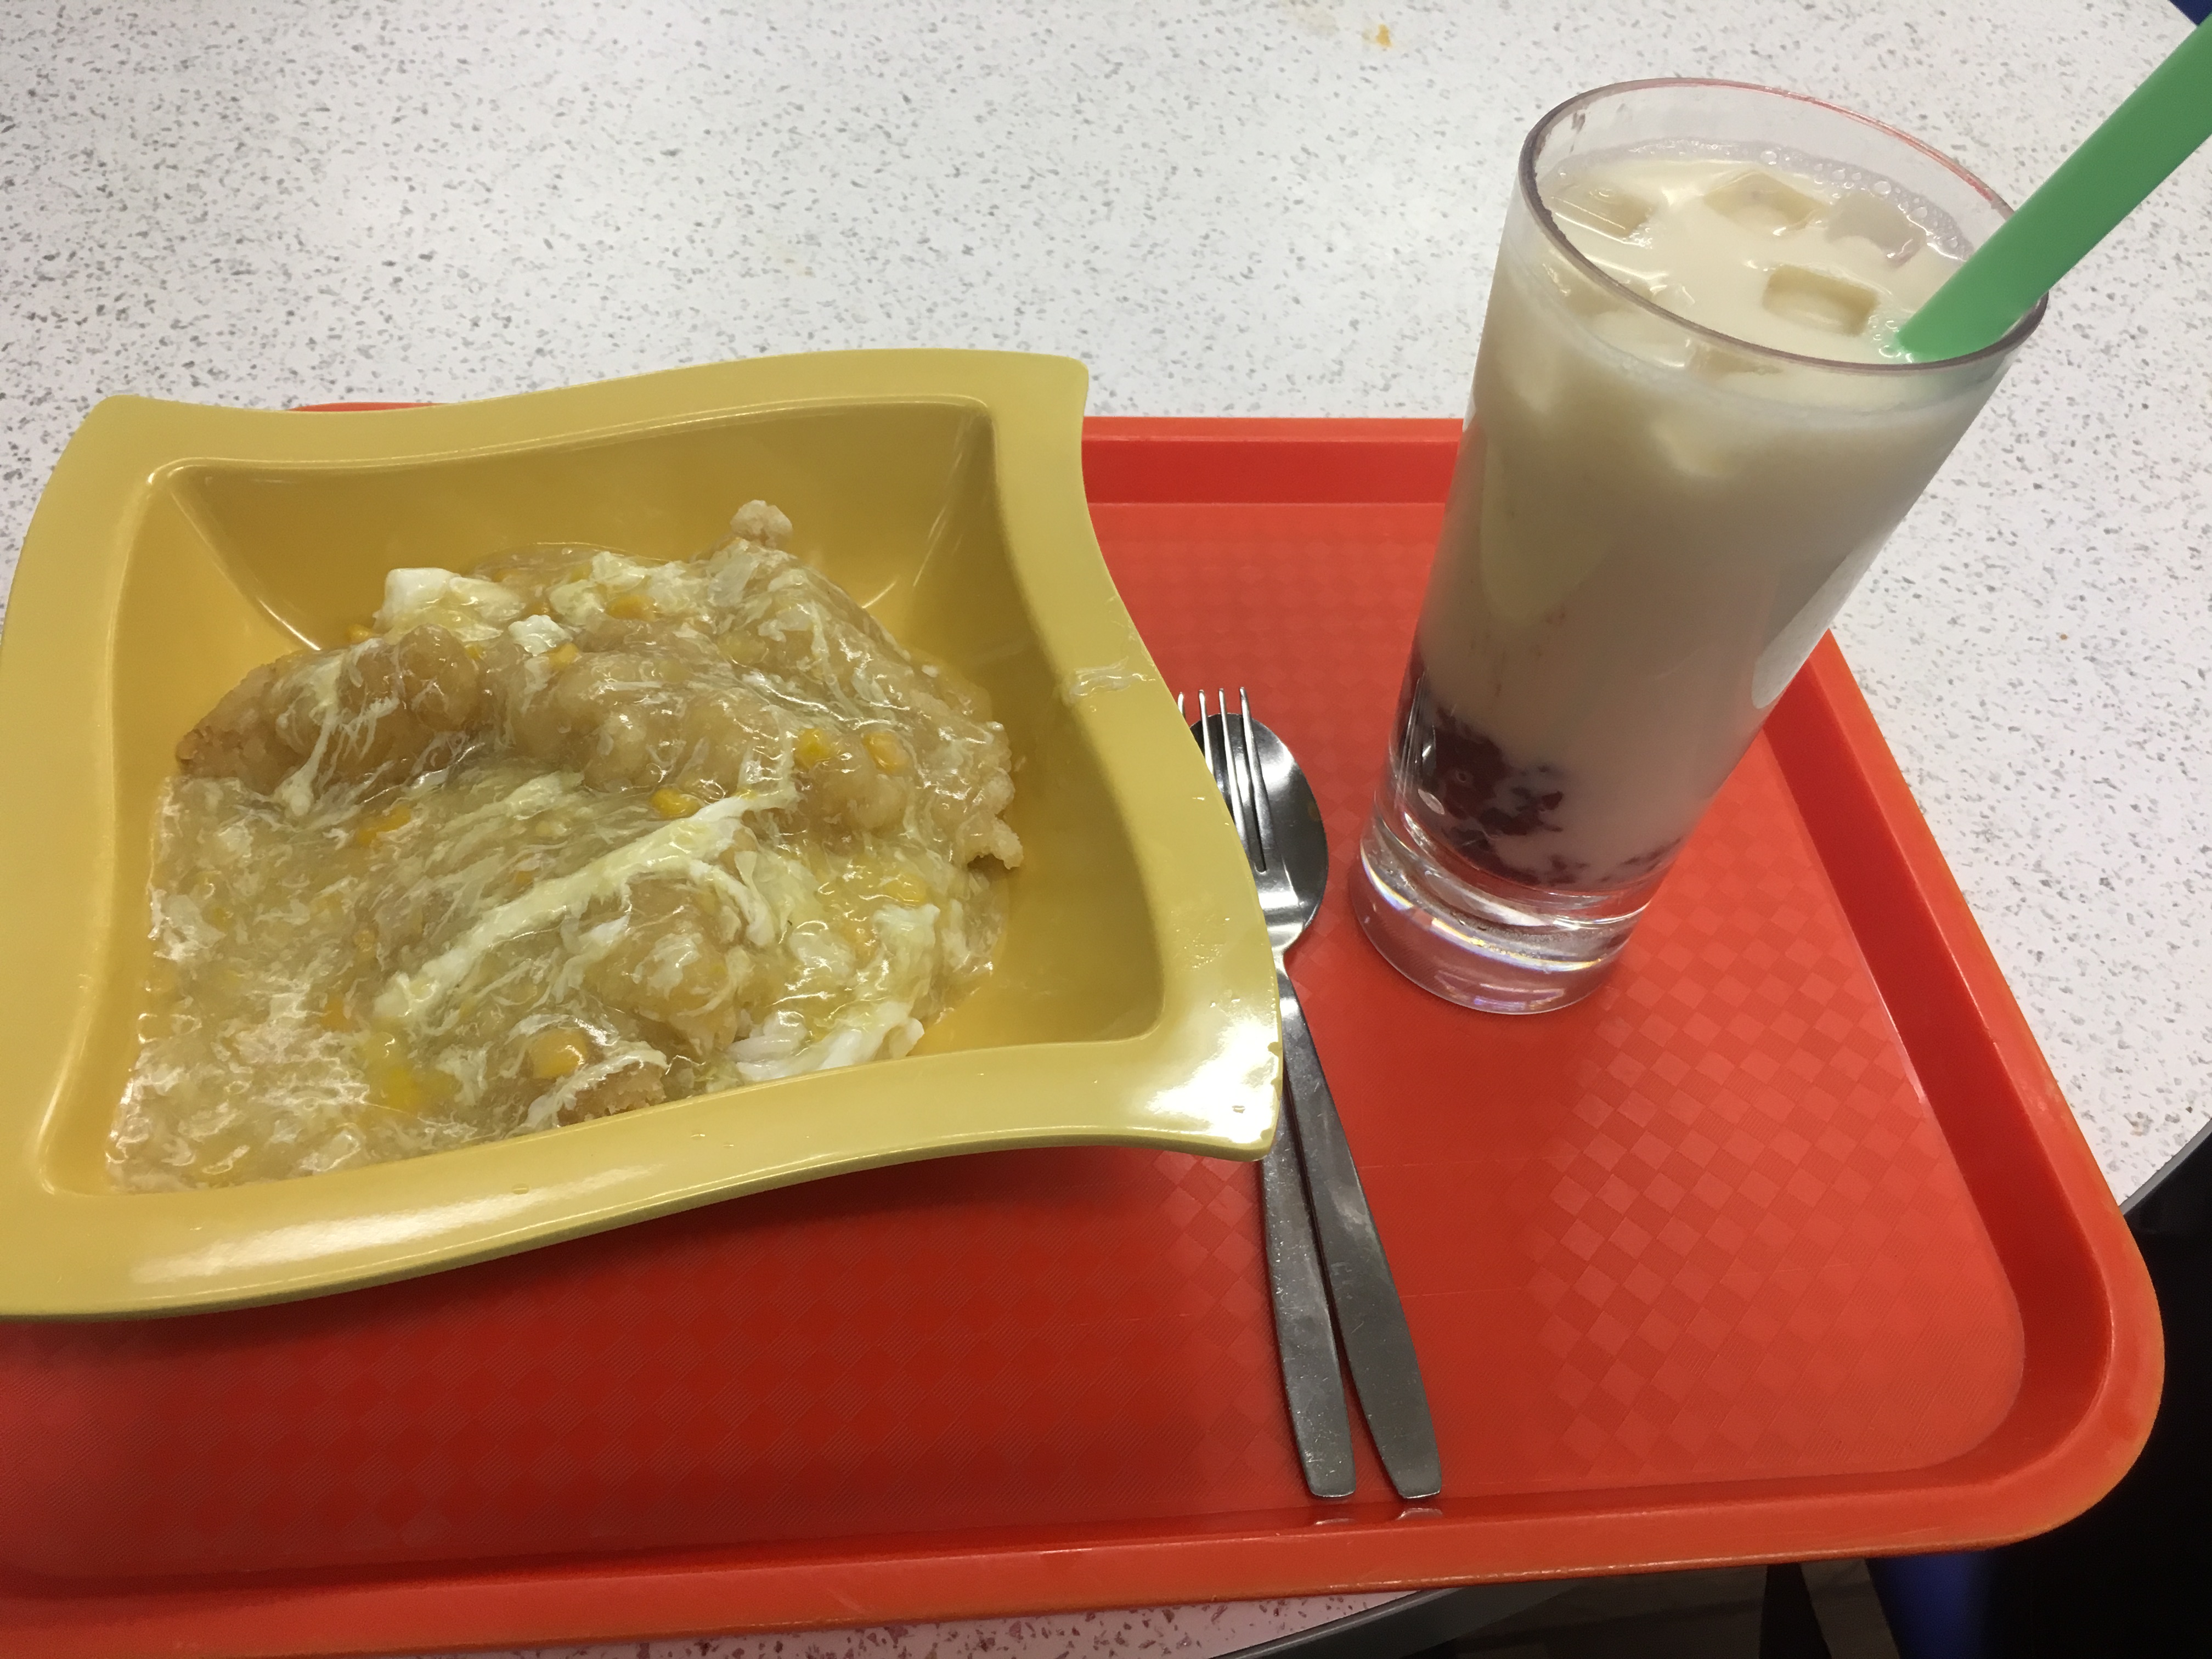 粟米魚塊飯 + 紅豆冰